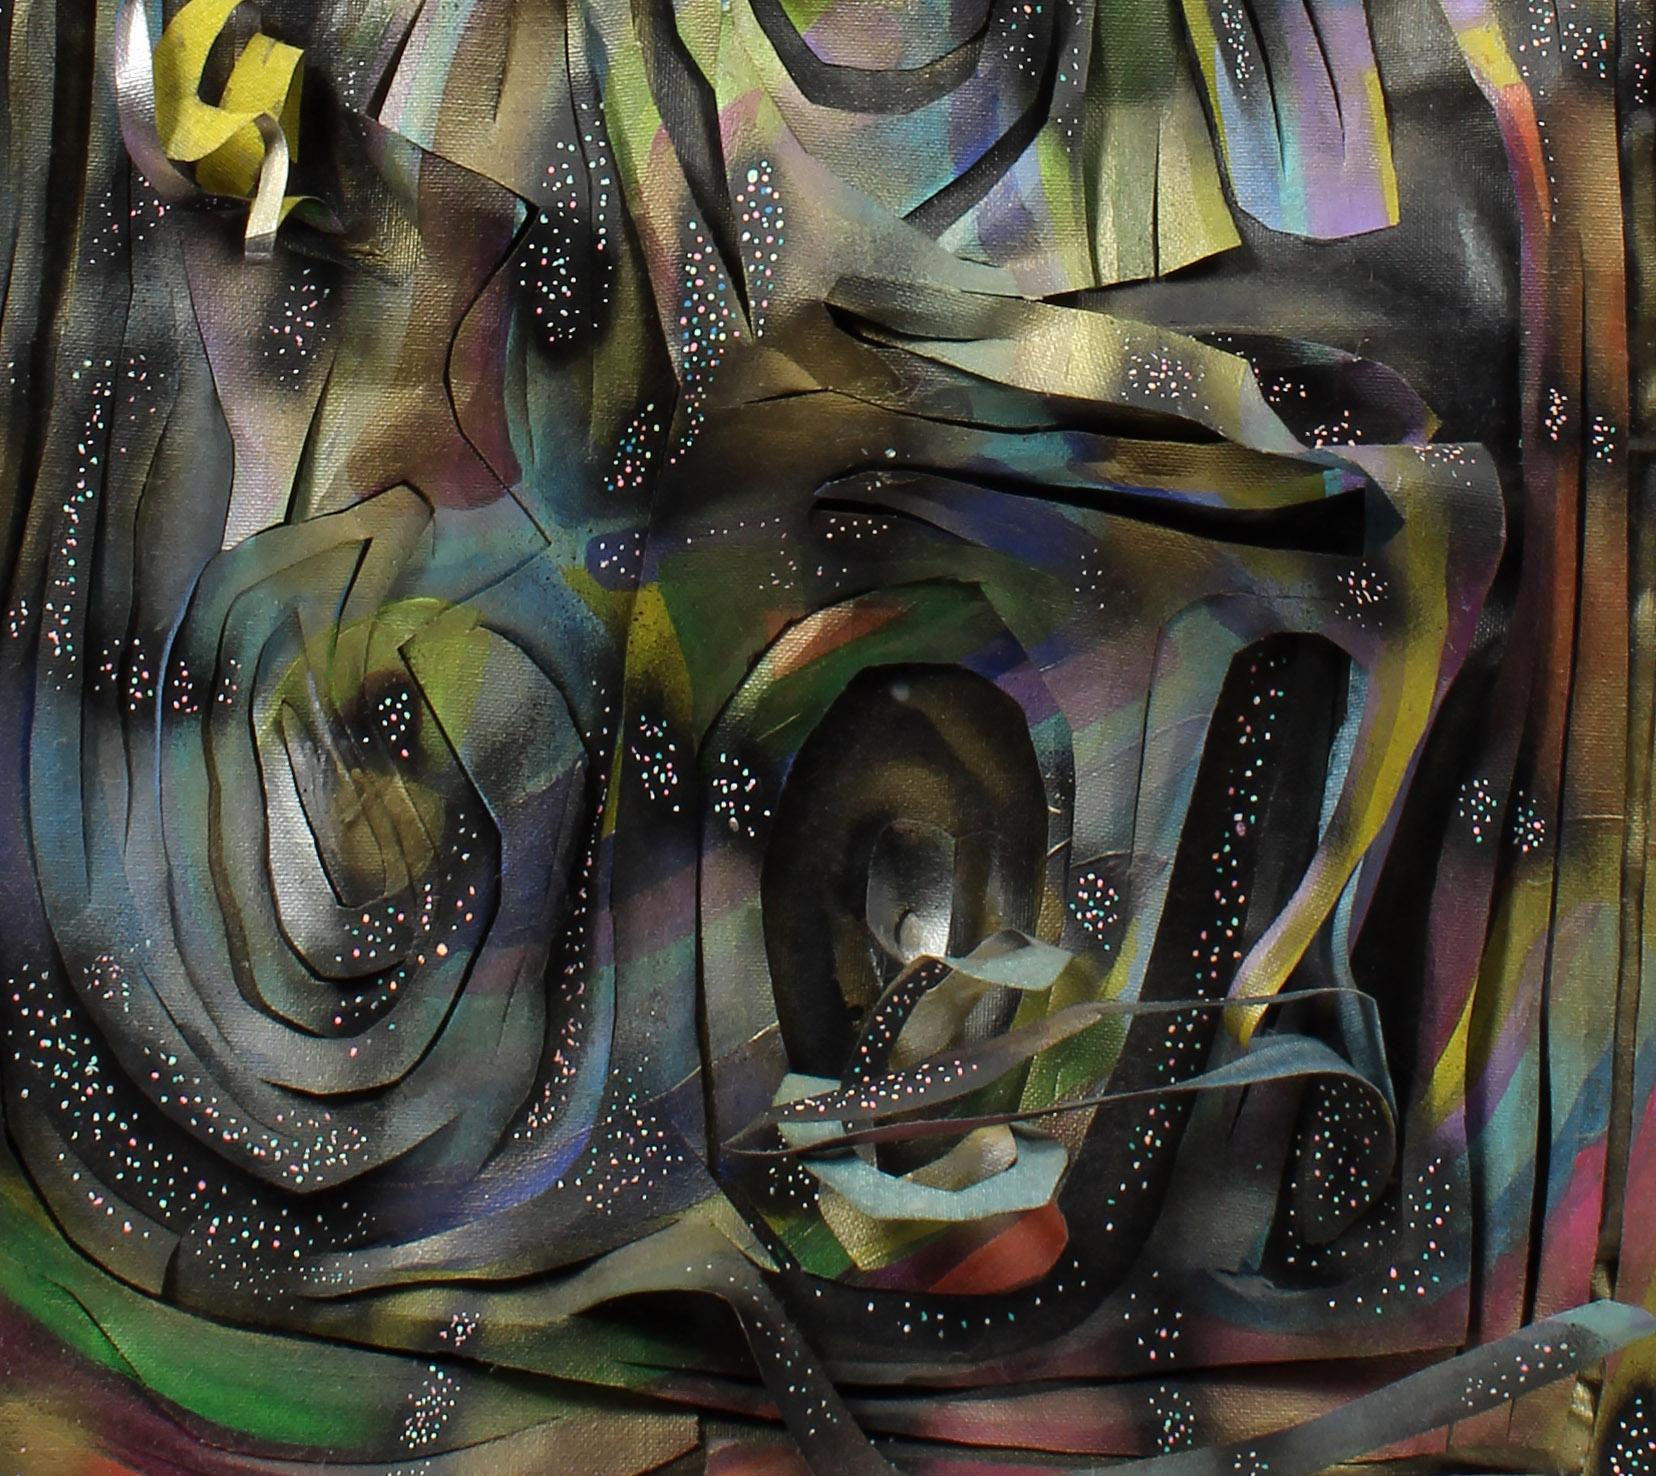 Amerikanische aufstrebende zeitgenössische Künstlerskulptur auf Leinwand, gerahmt, Sprühfarbe (Zeitgenössisch), Mixed Media Art, von Winslow Tee